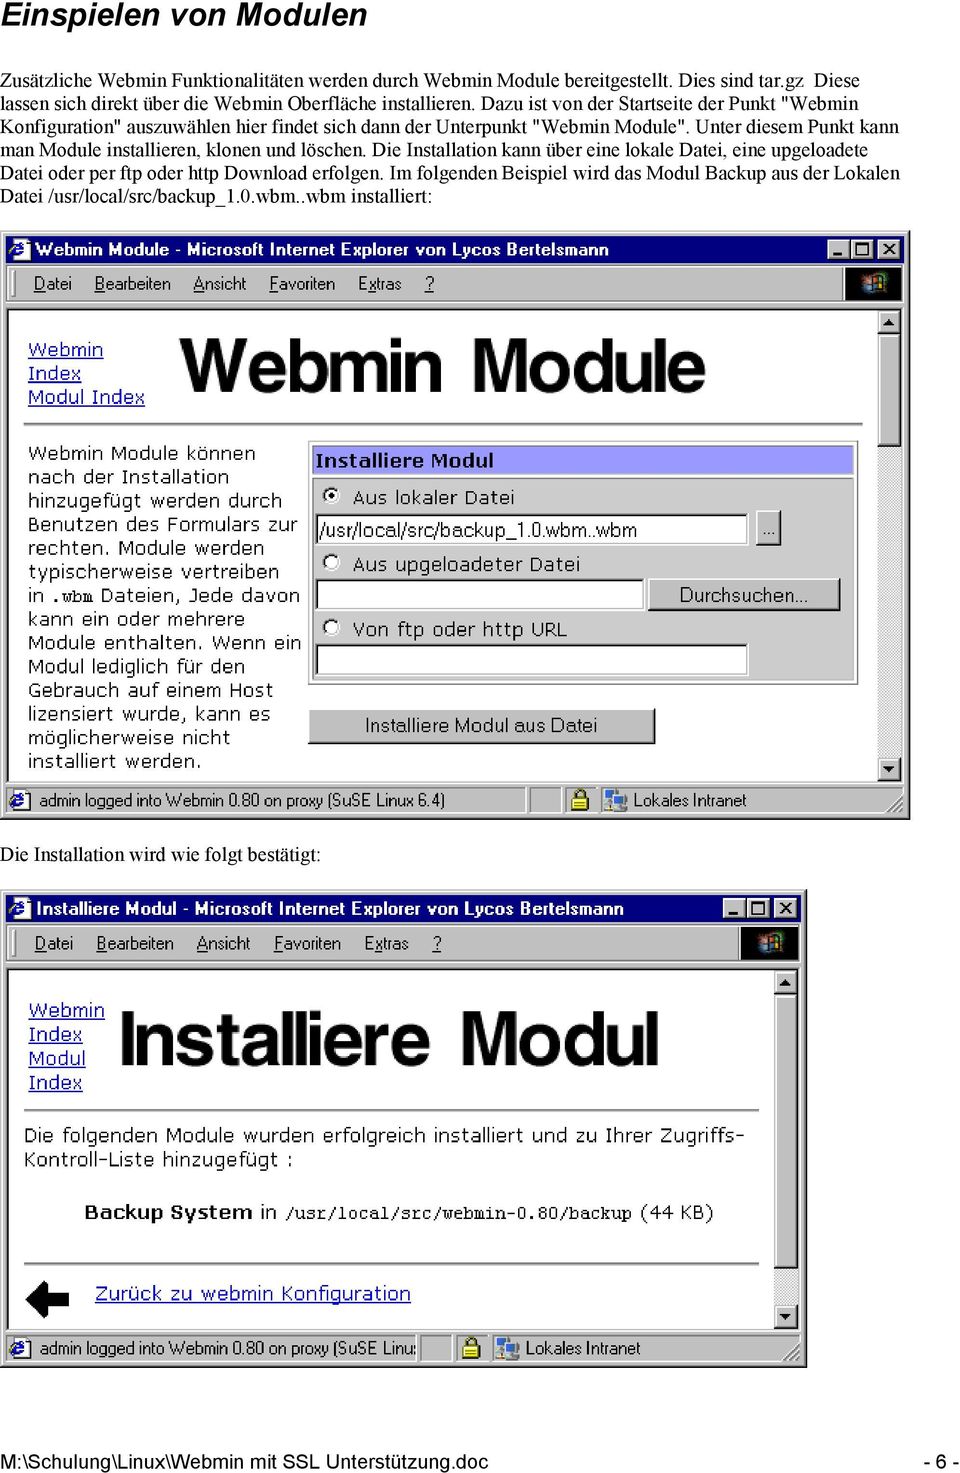 Dazu ist von der Startseite der Punkt "Webmin Konfiguration" auszuwählen hier findet sich dann der Unterpunkt "Webmin Module".